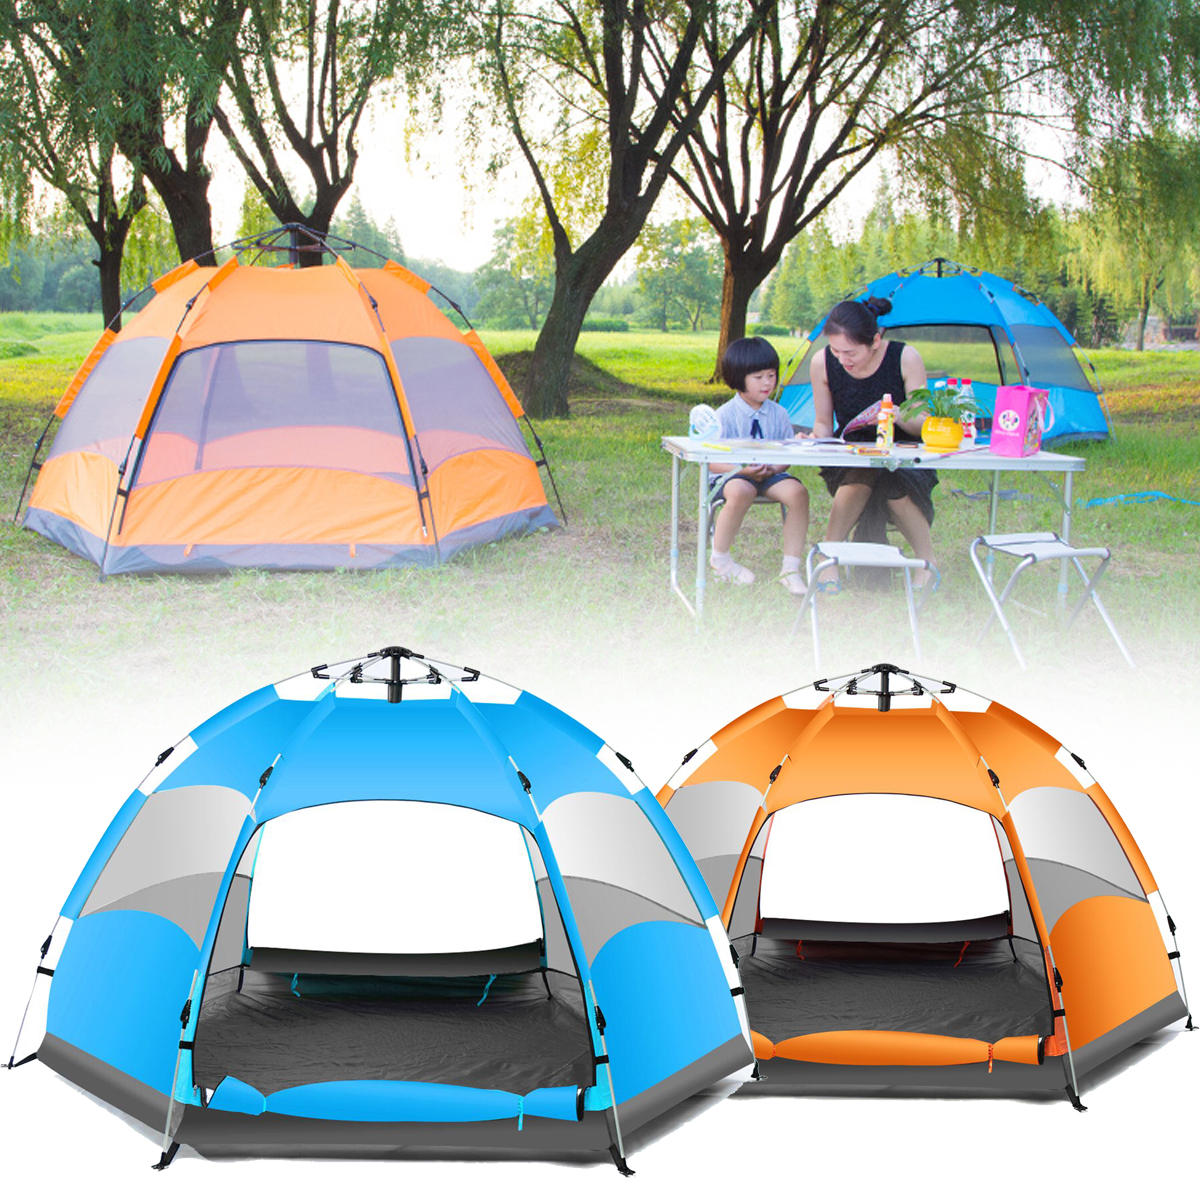 Tenda da campeggio automatica per 3-4 persone, impermeabile, a doppio strato, protezione UV sulla spiaggia.